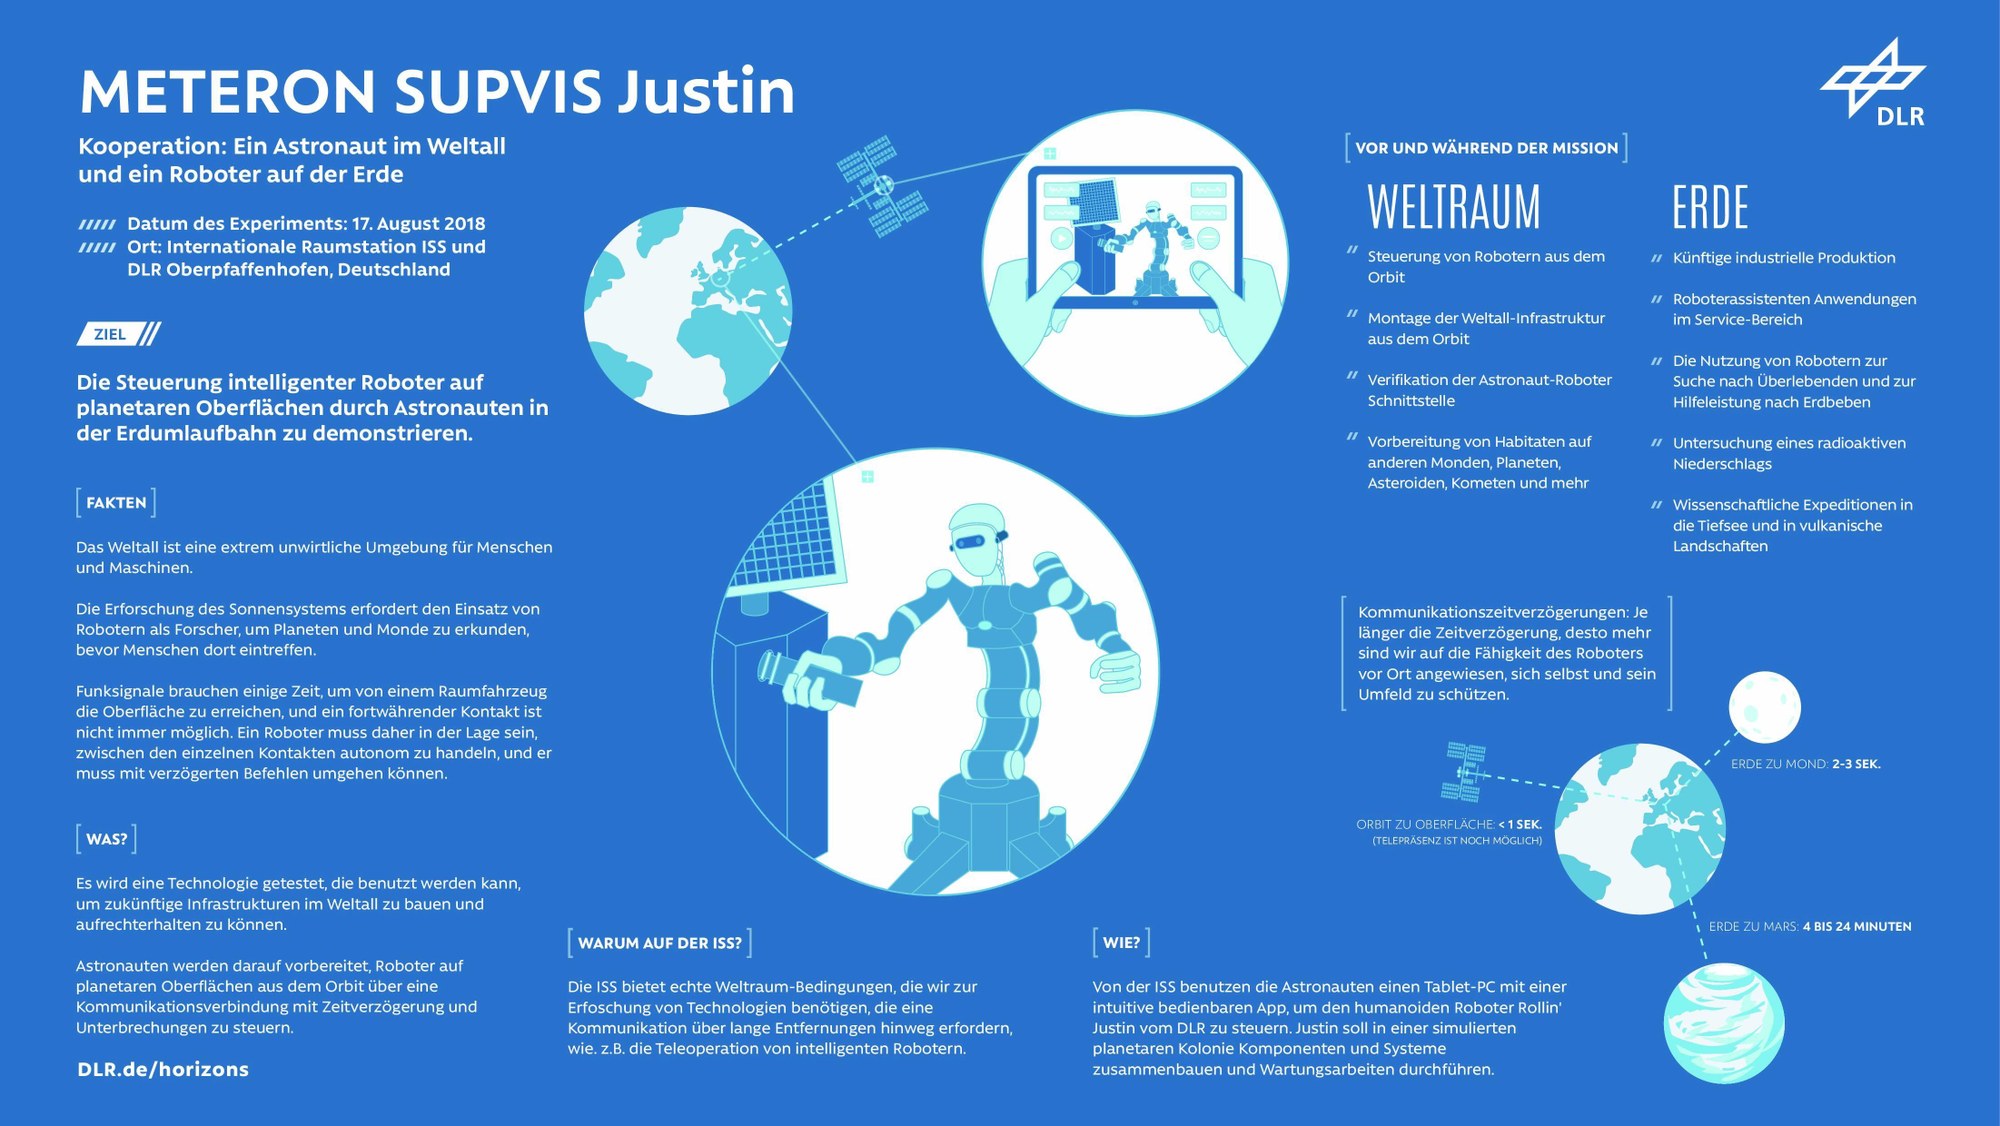 METERON SUPVIS Justin: Astronaut im All und Roboter auf der Erde arbeiten zusammen